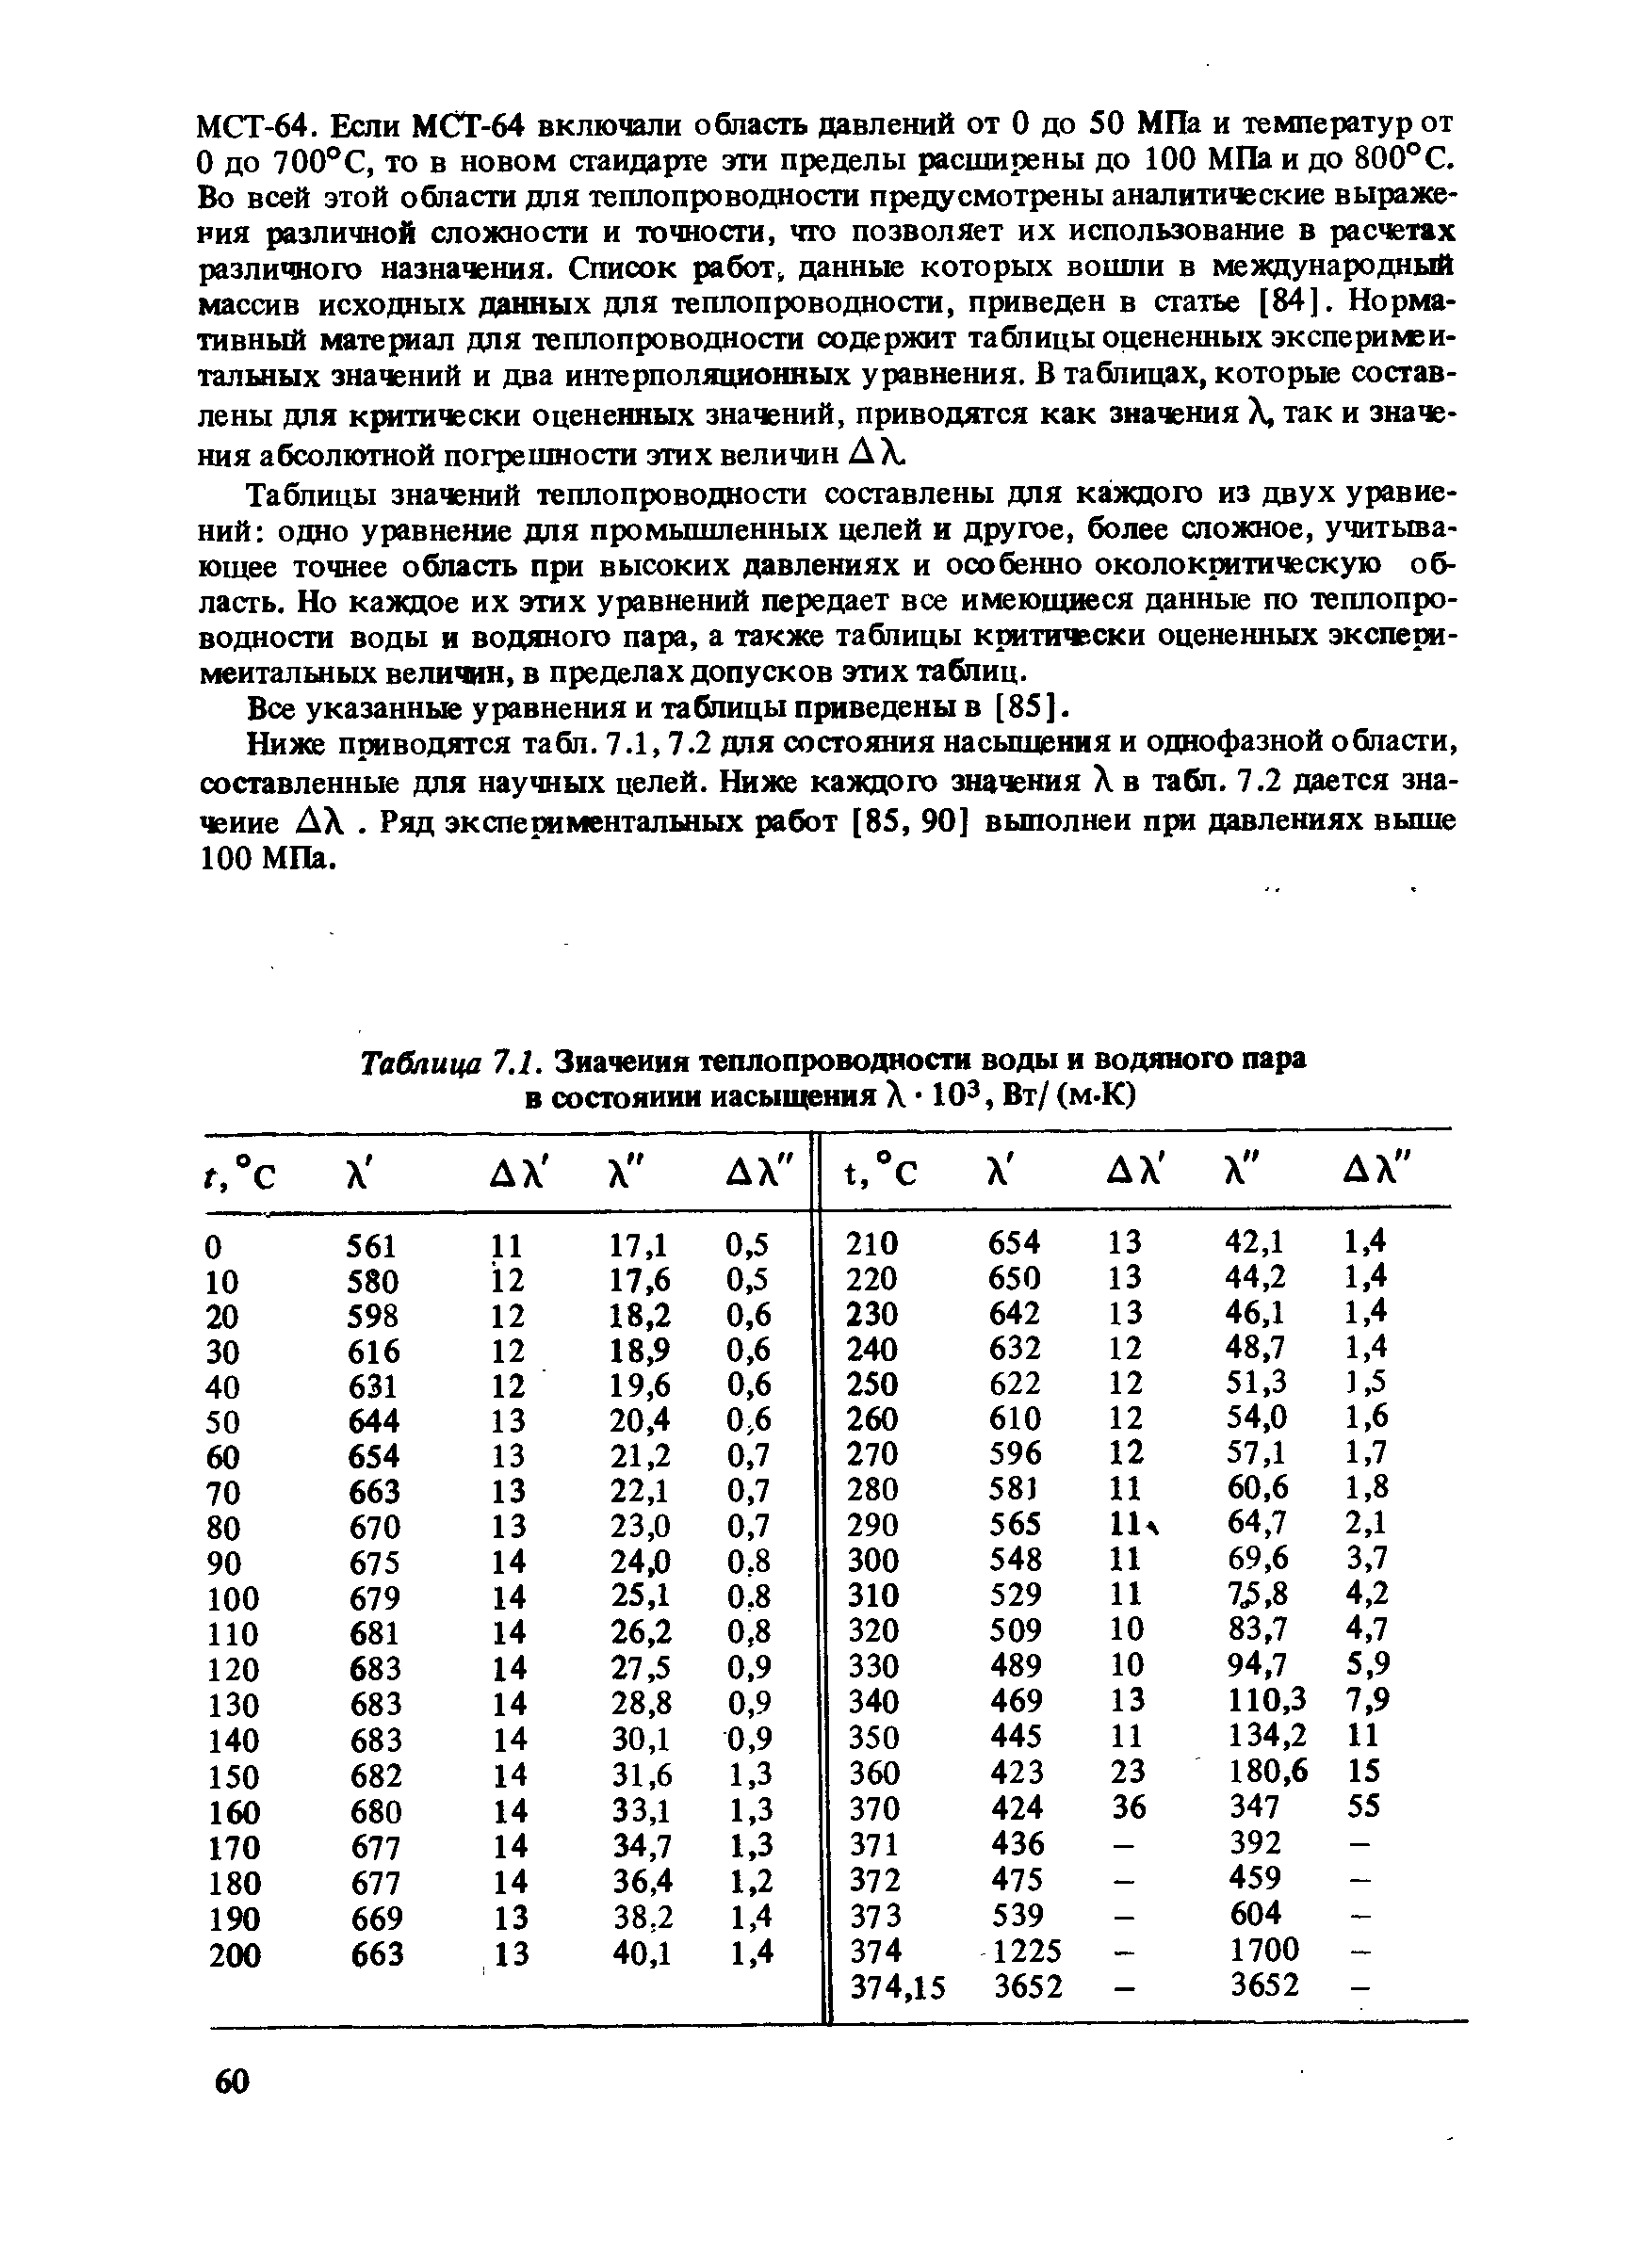 Все указанные уравнения и таблицы приведены в [85 ].
